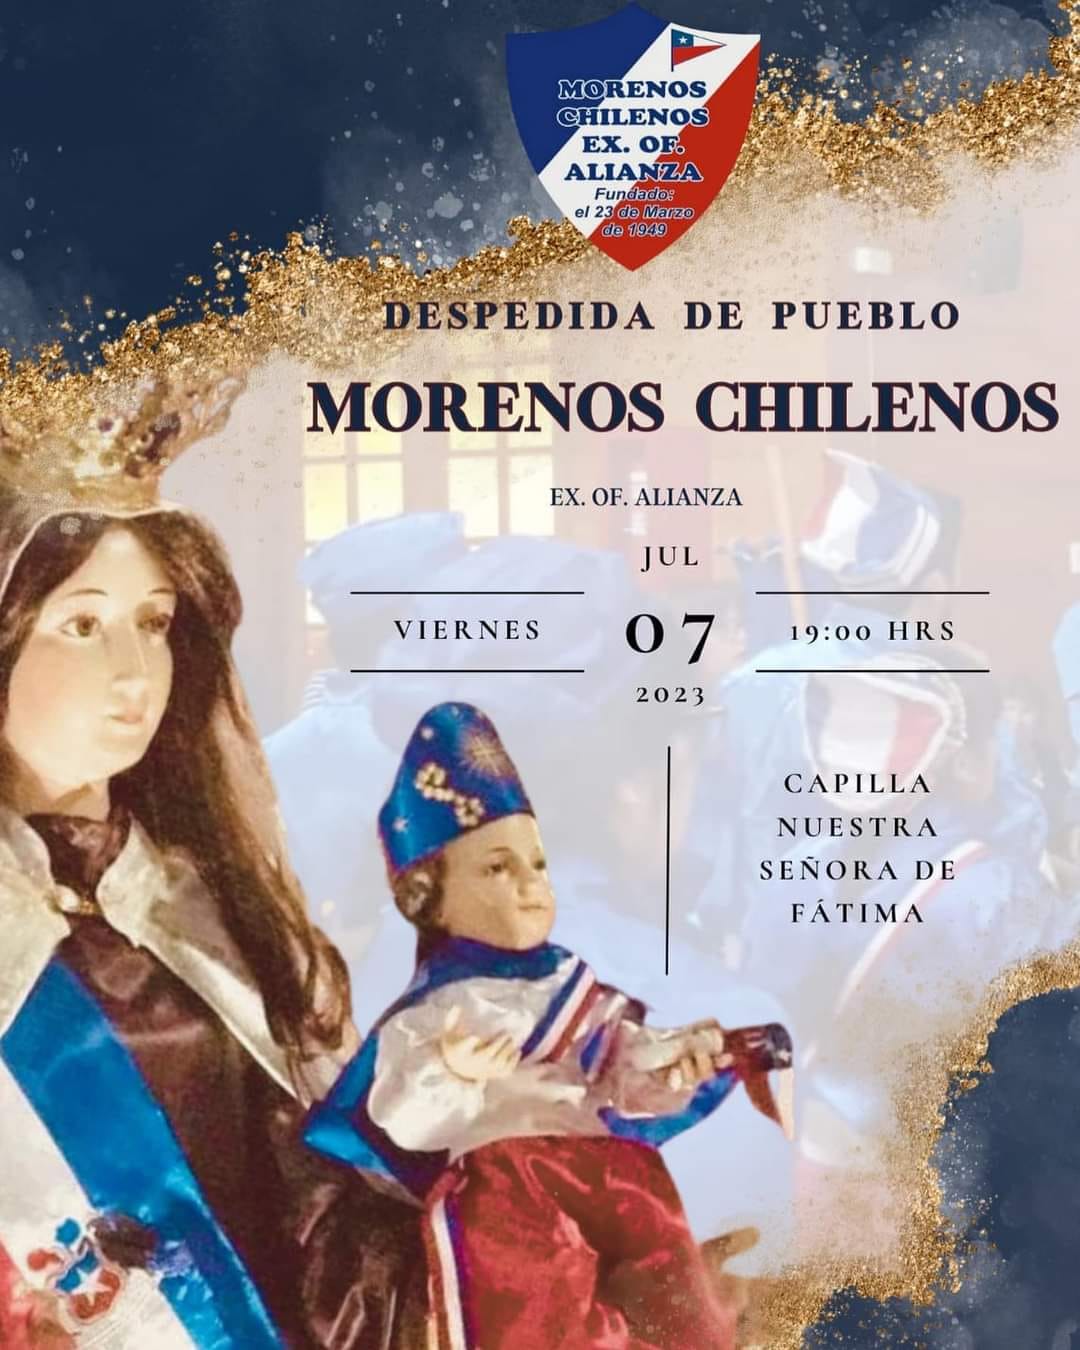 Despedida de Pueblo Morenos Chilenos